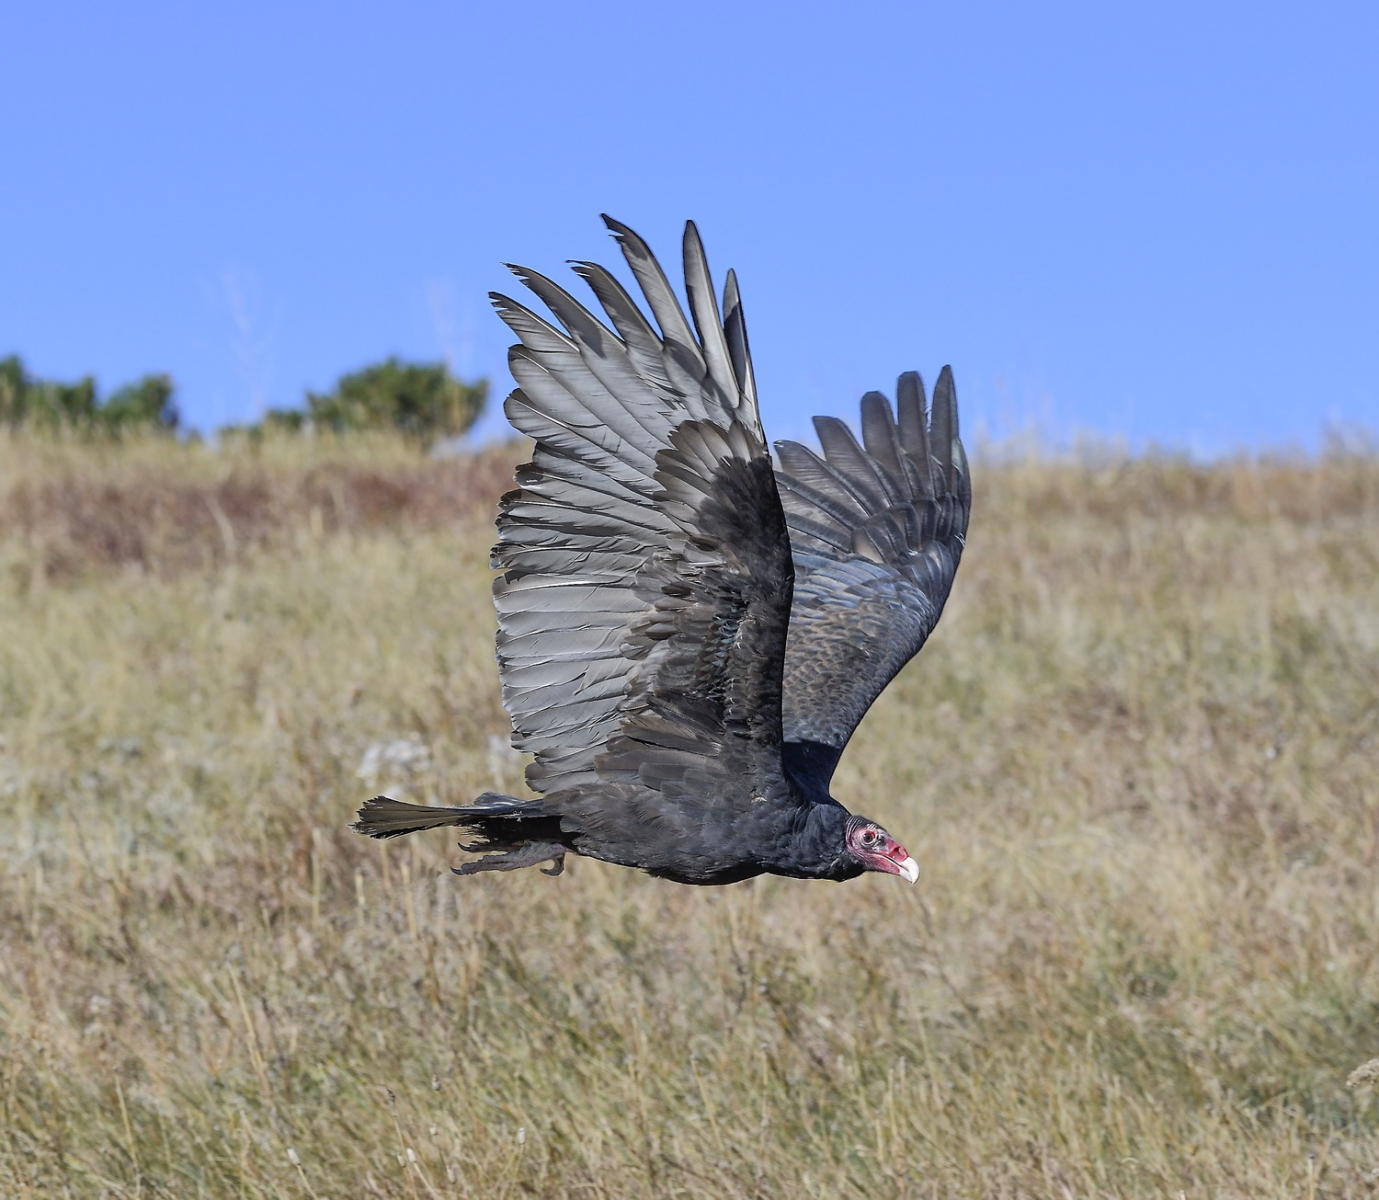 DSC_9950_1A4 - Turkey Vulture